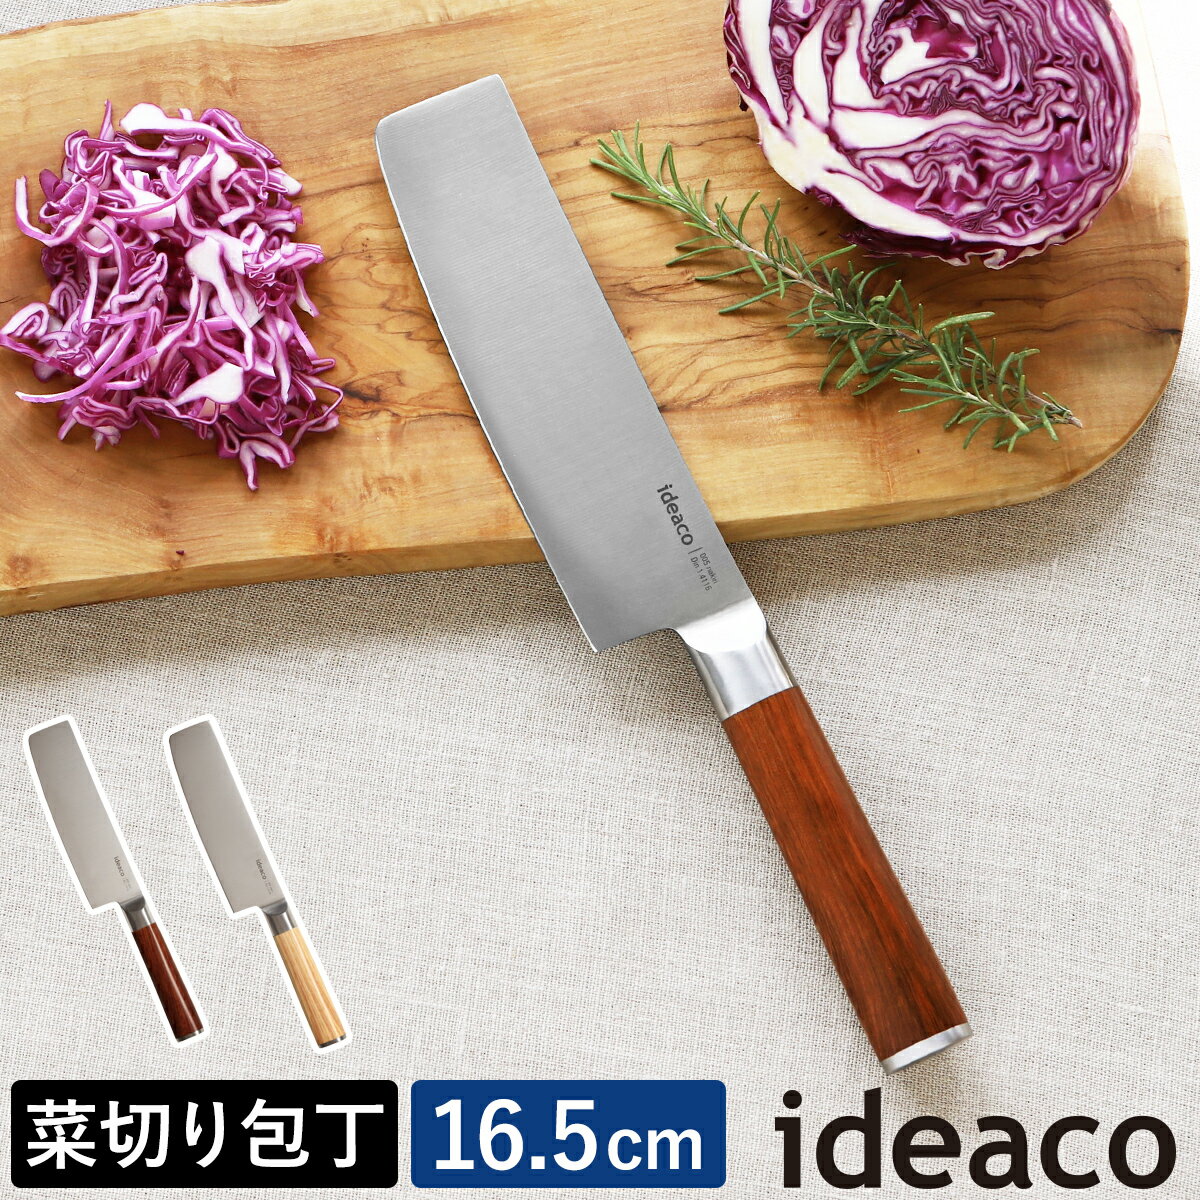 ؐ؂ nn16.5cm 165mm CfAR  ؕ \ ؂ ݂؂ א؂ ؗp ؐ n E   Lb` 䏊   ؖڒ Lb`iCt ق傤 蕨 Mtg   m ideaco kitchen knife nakiri n